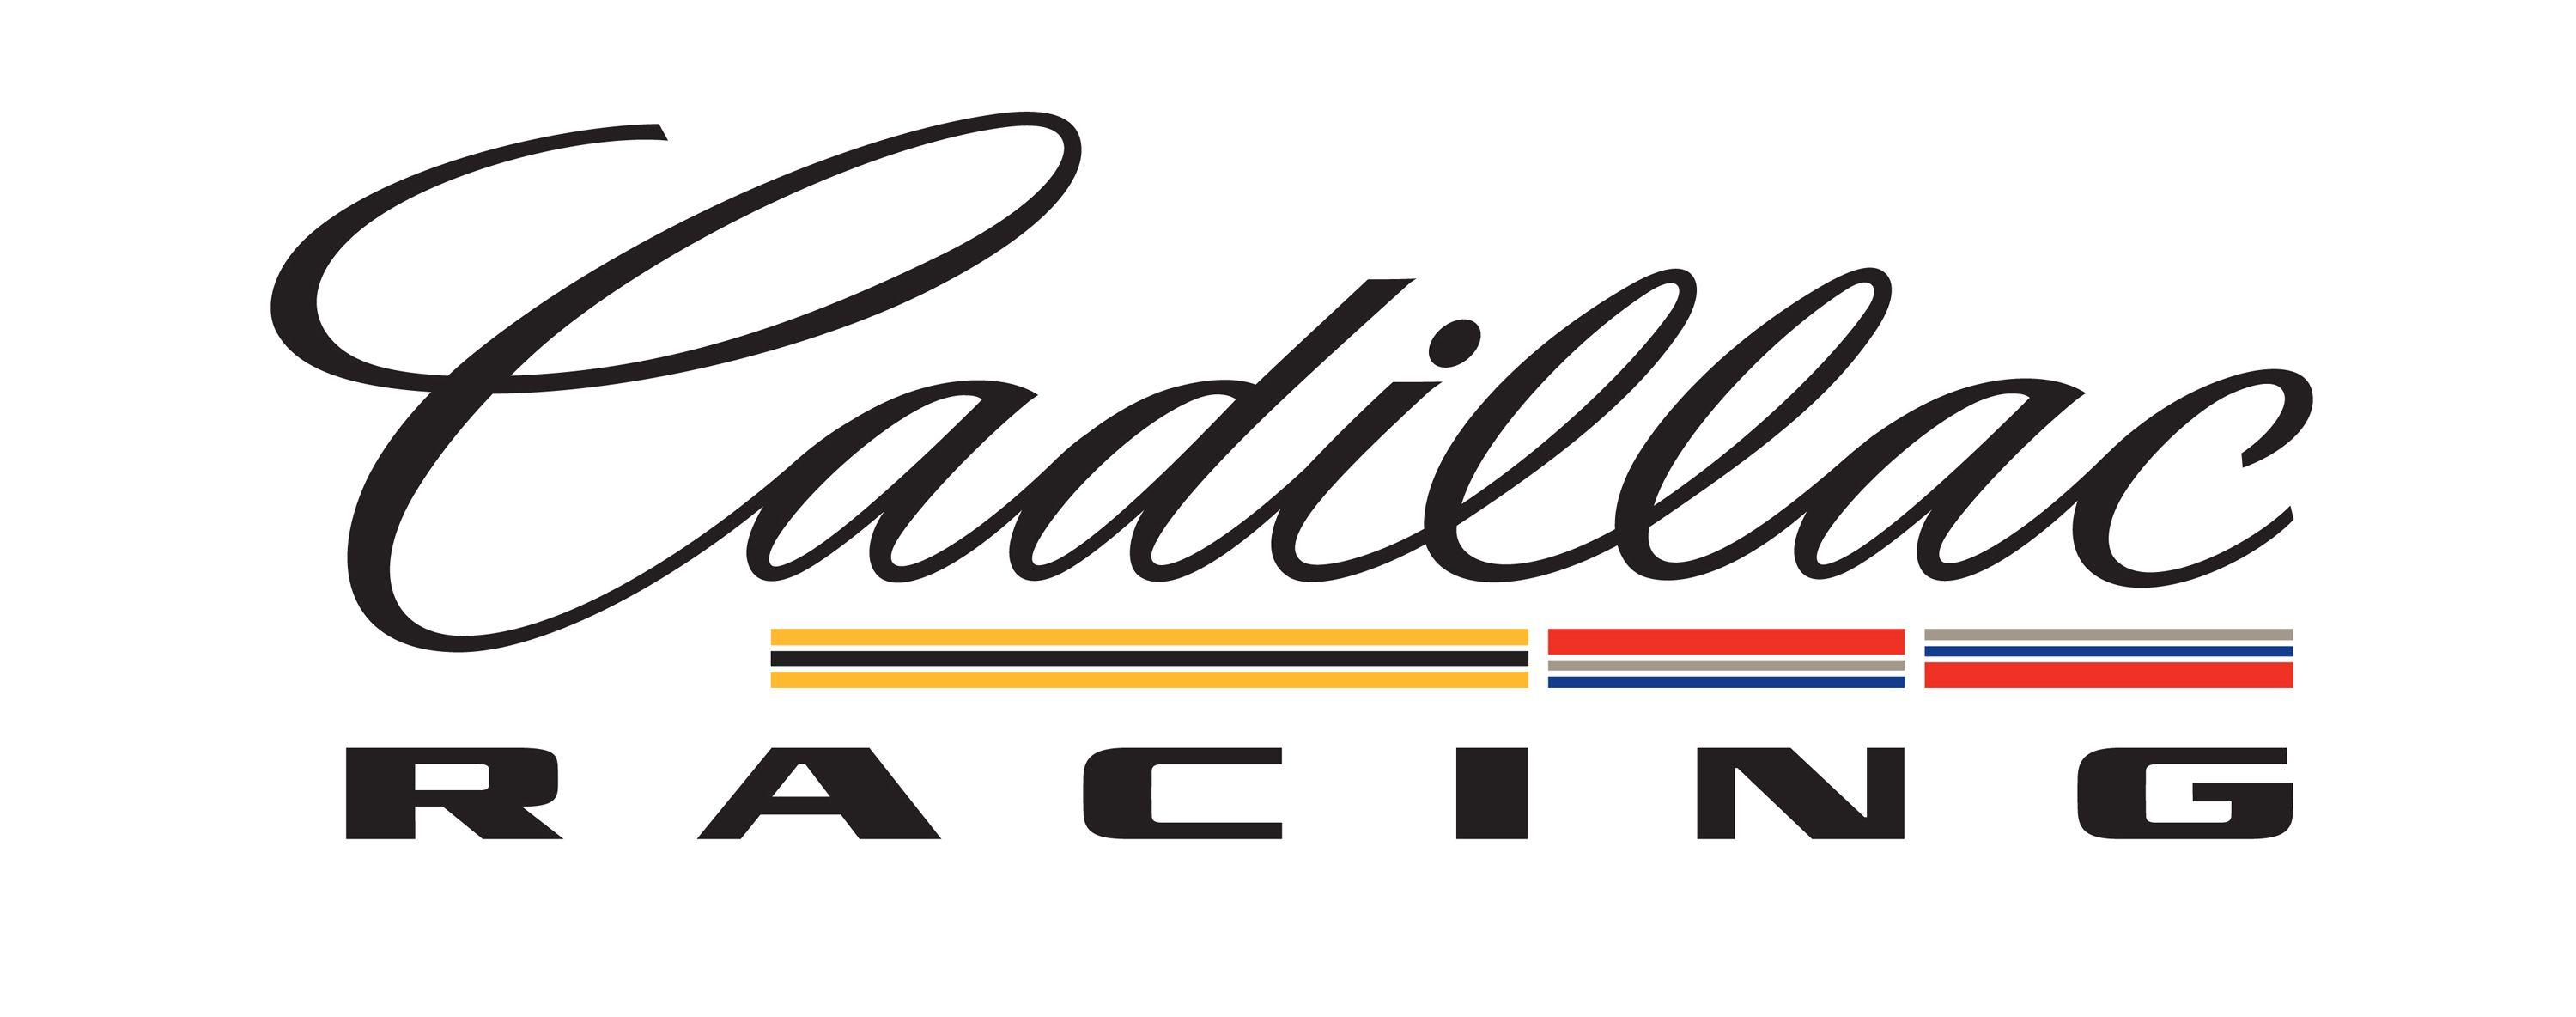 Cadillac Racing Logo - Japanese